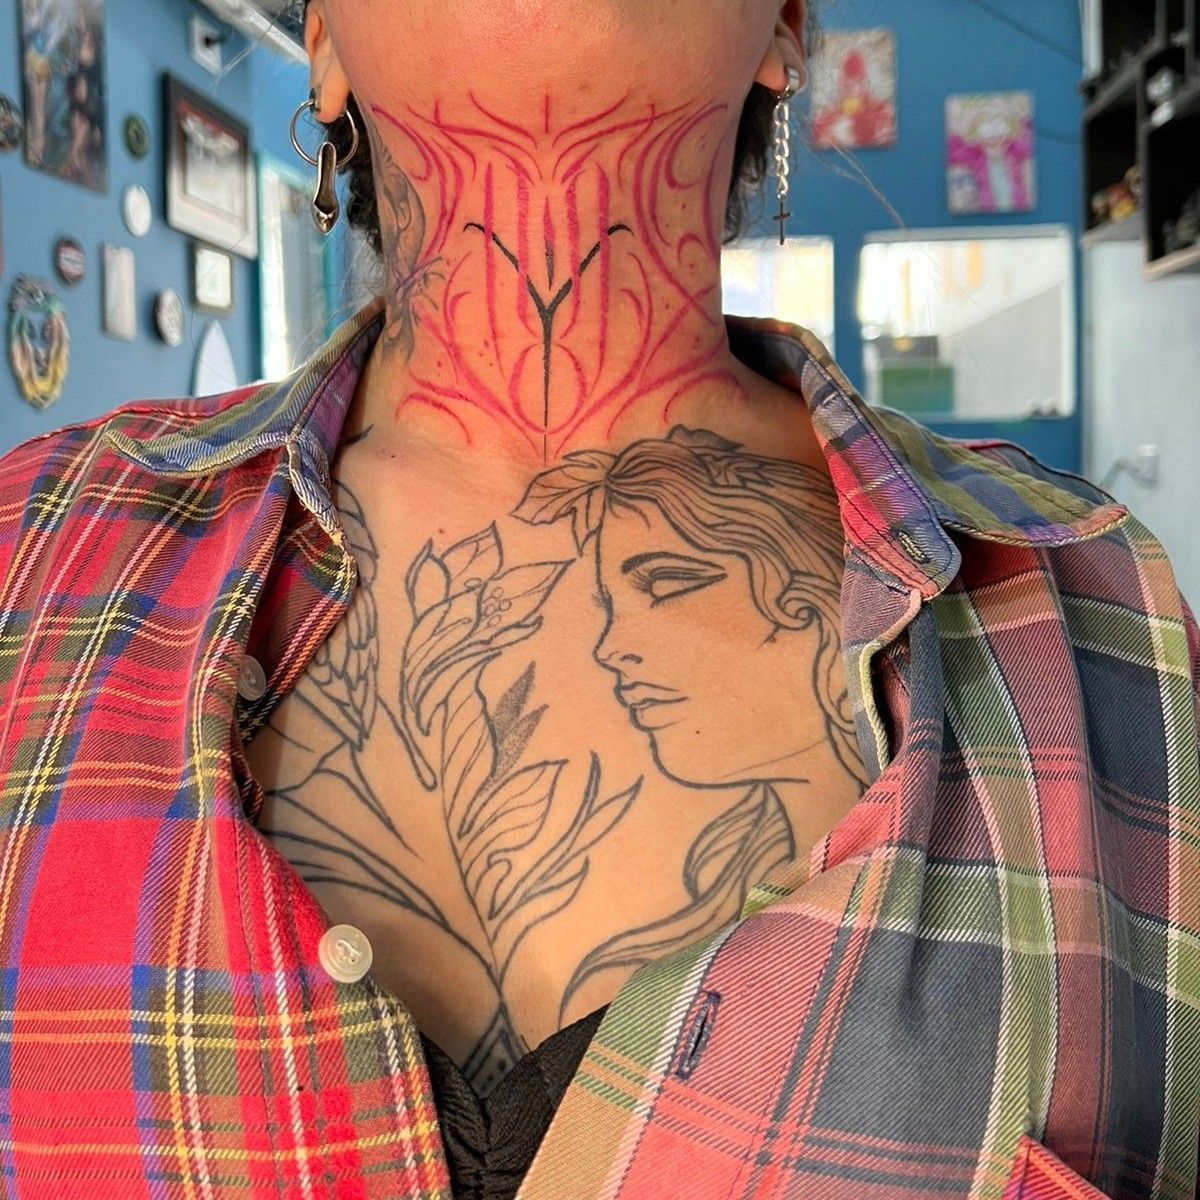 Portfólio de Tatuagem